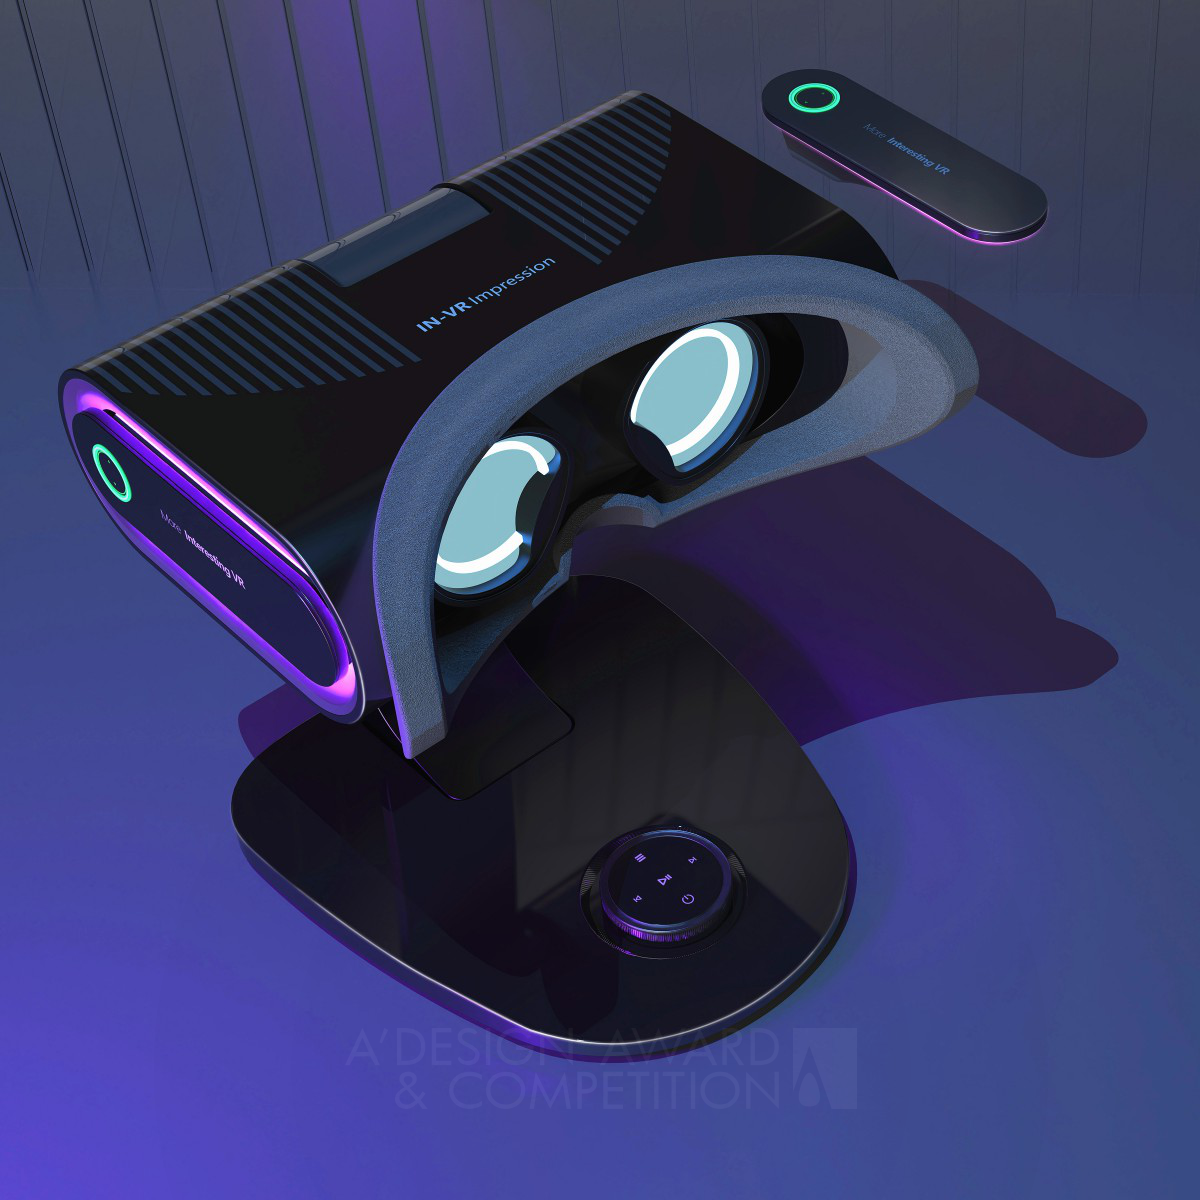 IN-VR Impression Device